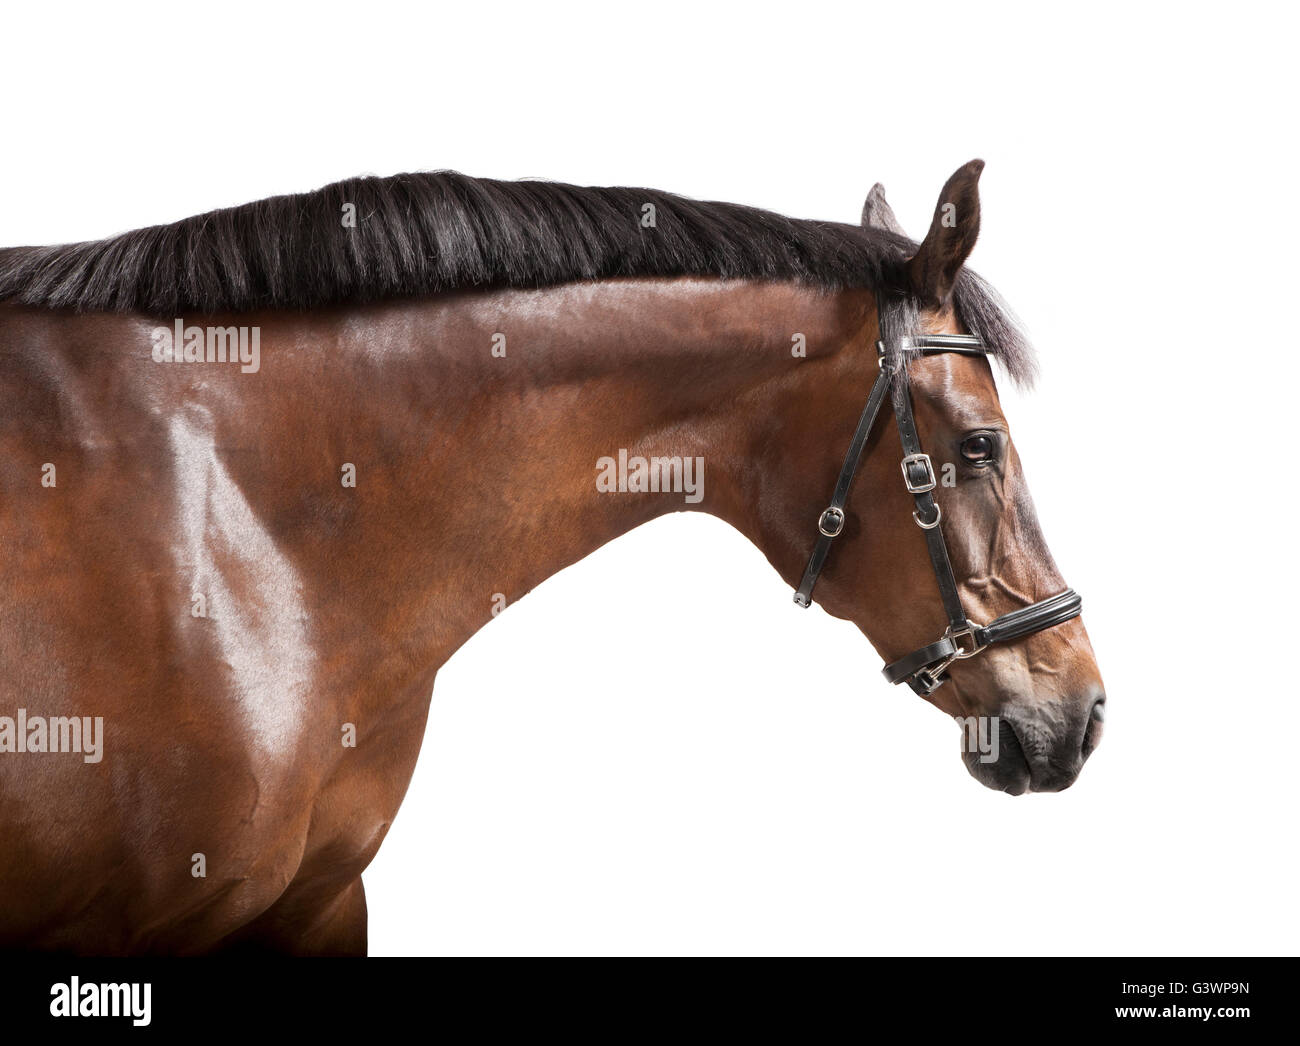 Un cavallo marrone in studio contro uno sfondo bianco, isolato Foto Stock